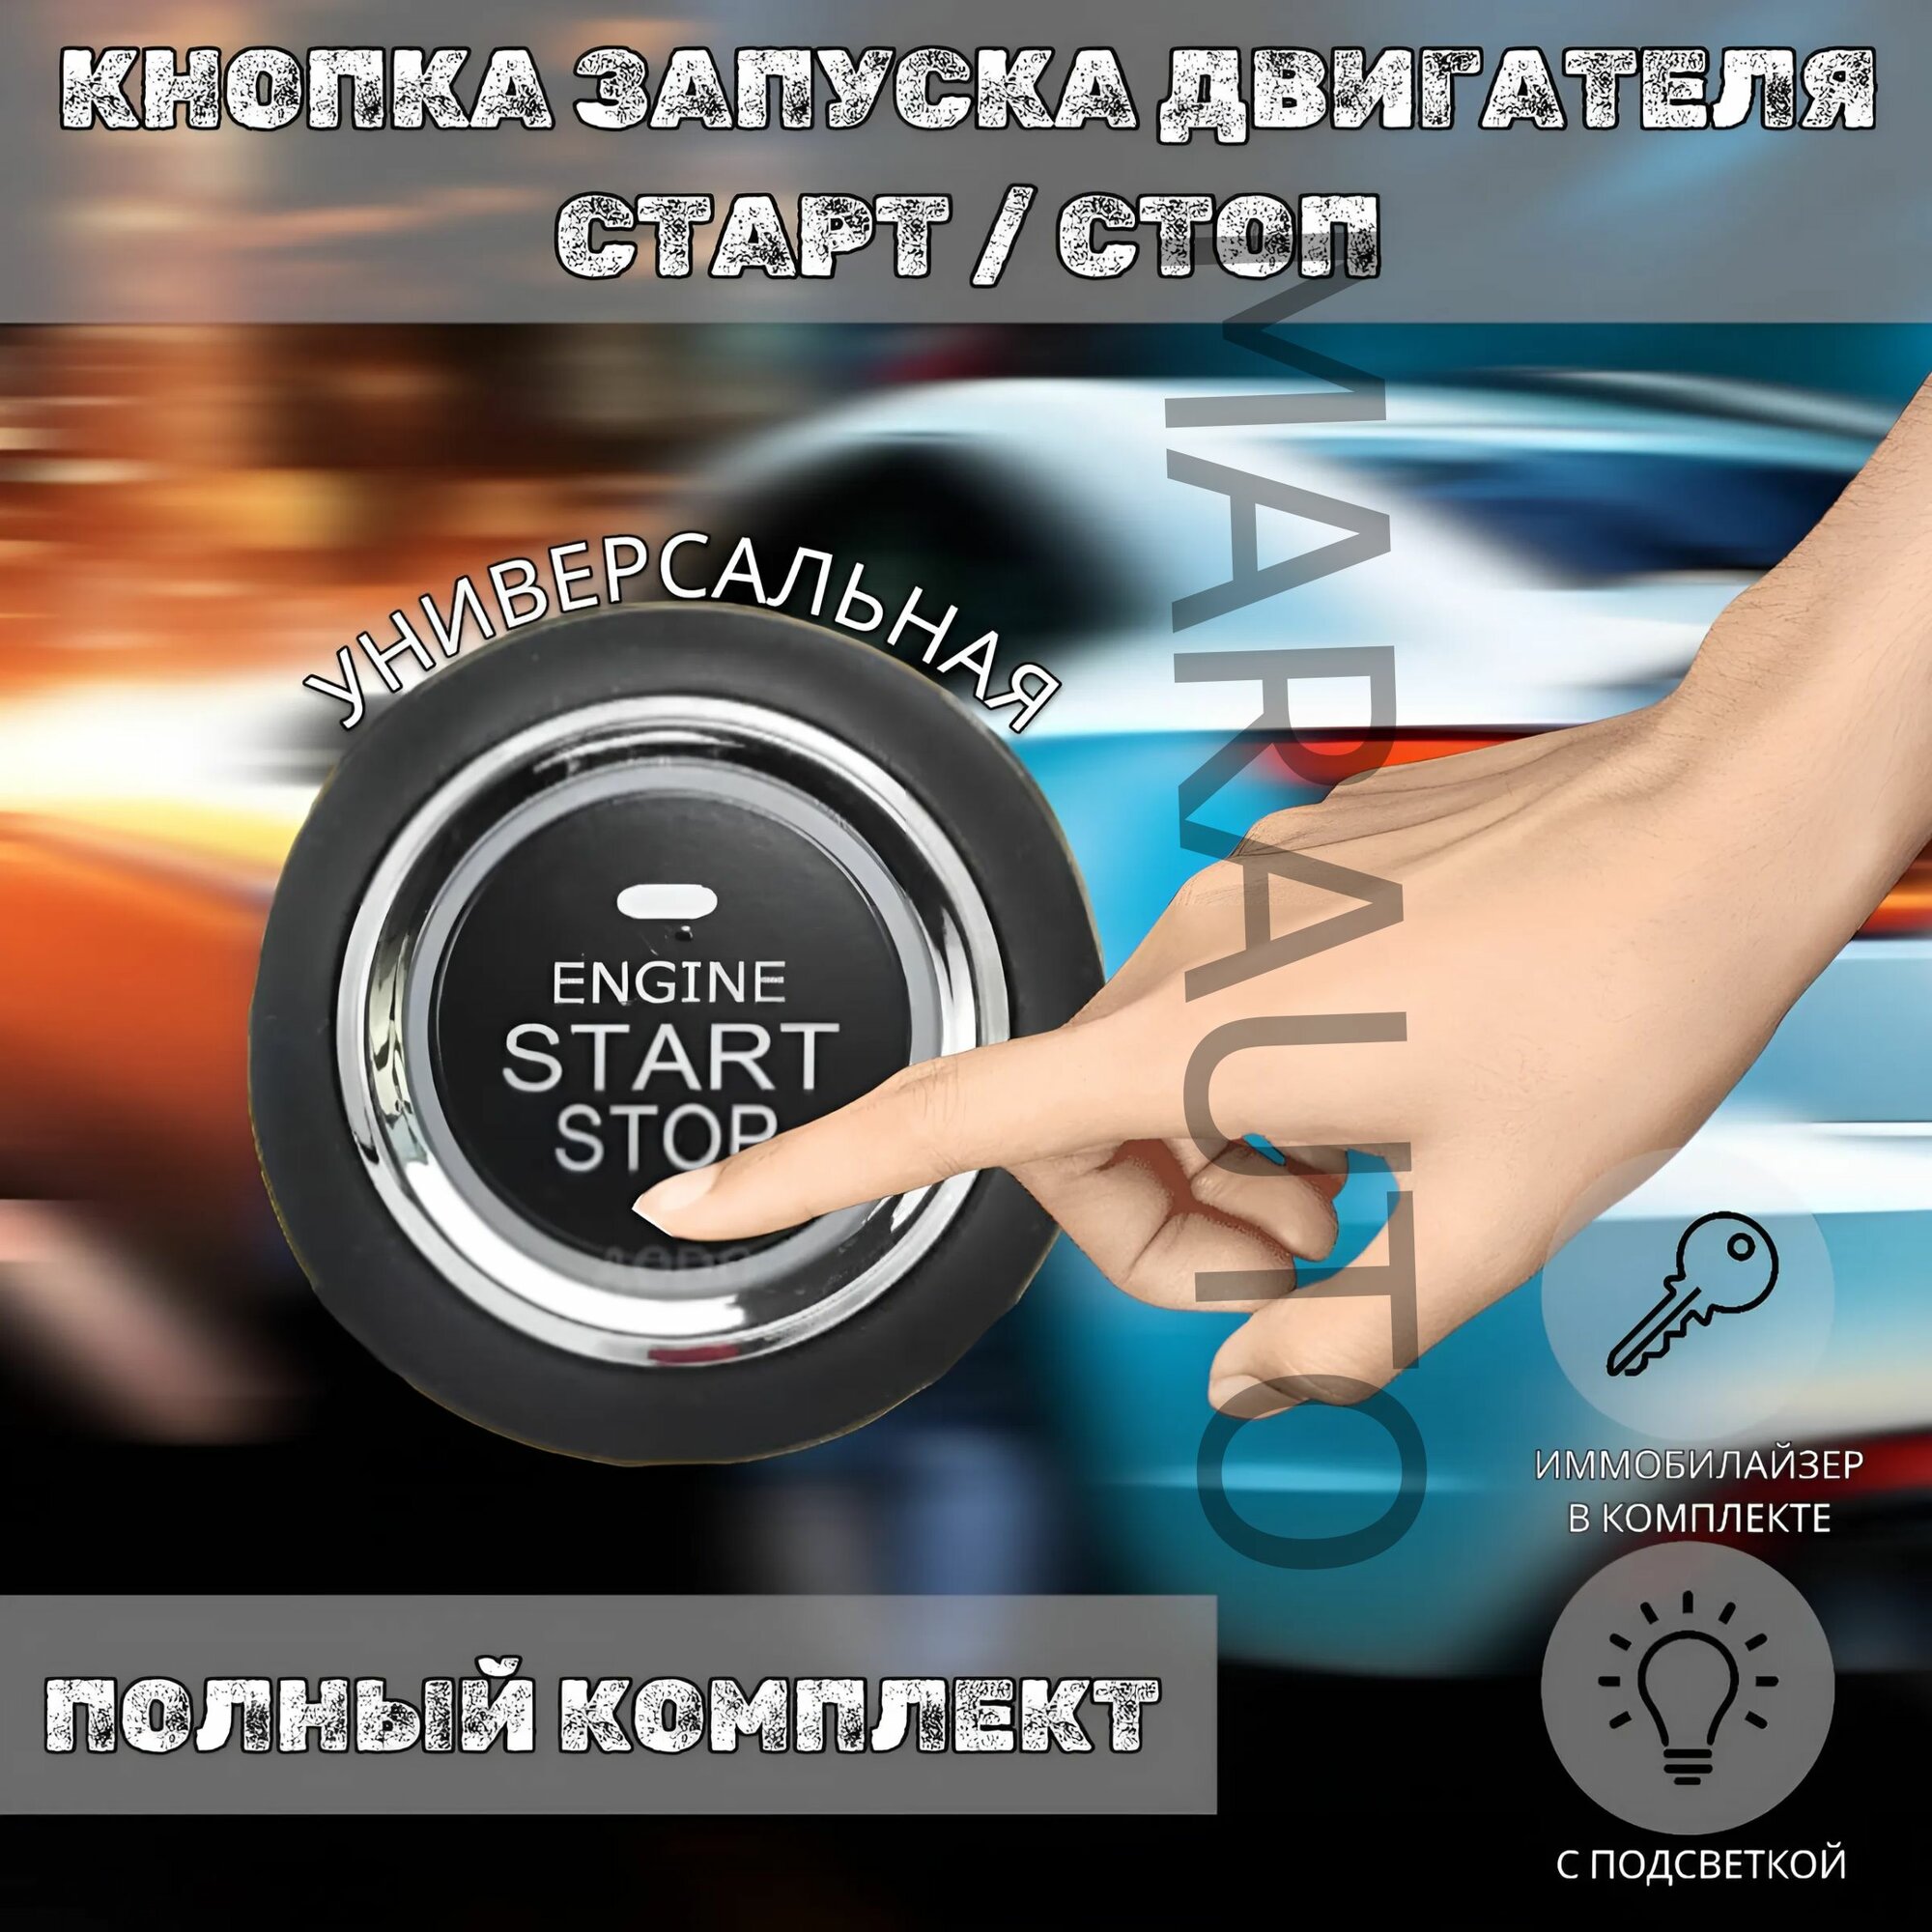 Кнопка старт стоп / Start-Stop система зажигания автомобиля / кнопка запуска и остановки двигателя / с иммобилайзером